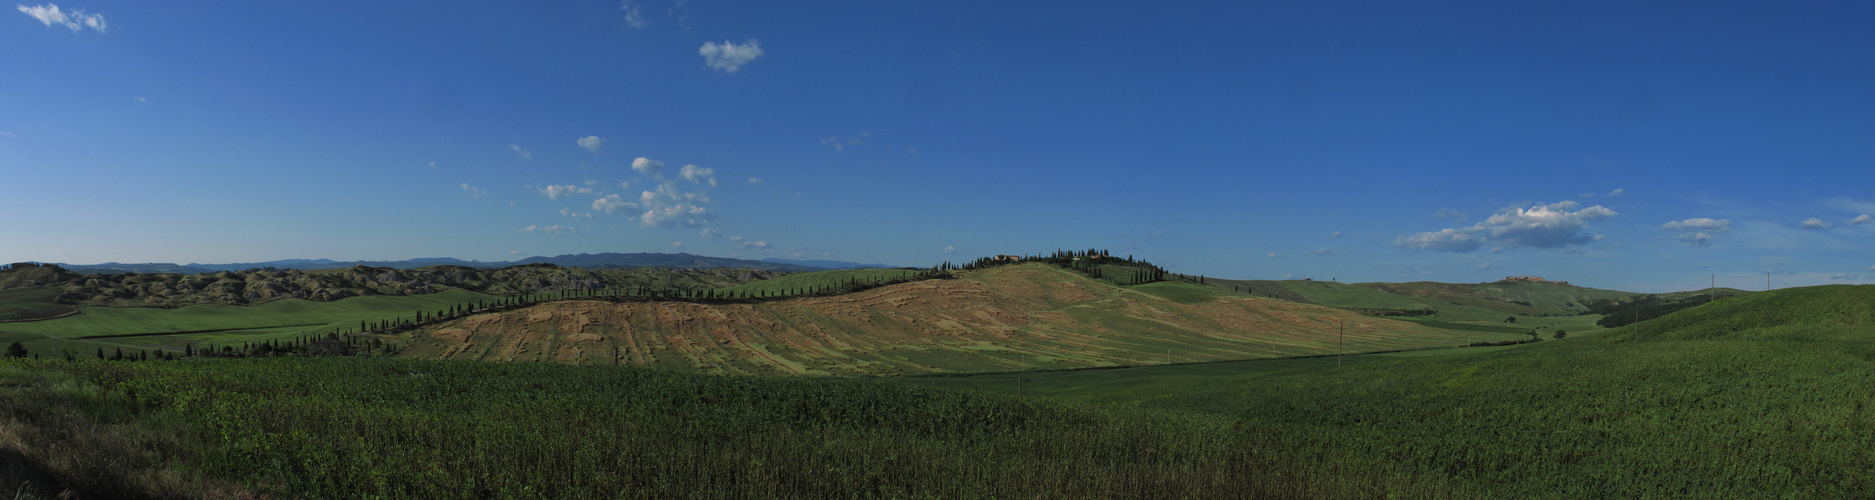 Terre di Siena, giugno 2009